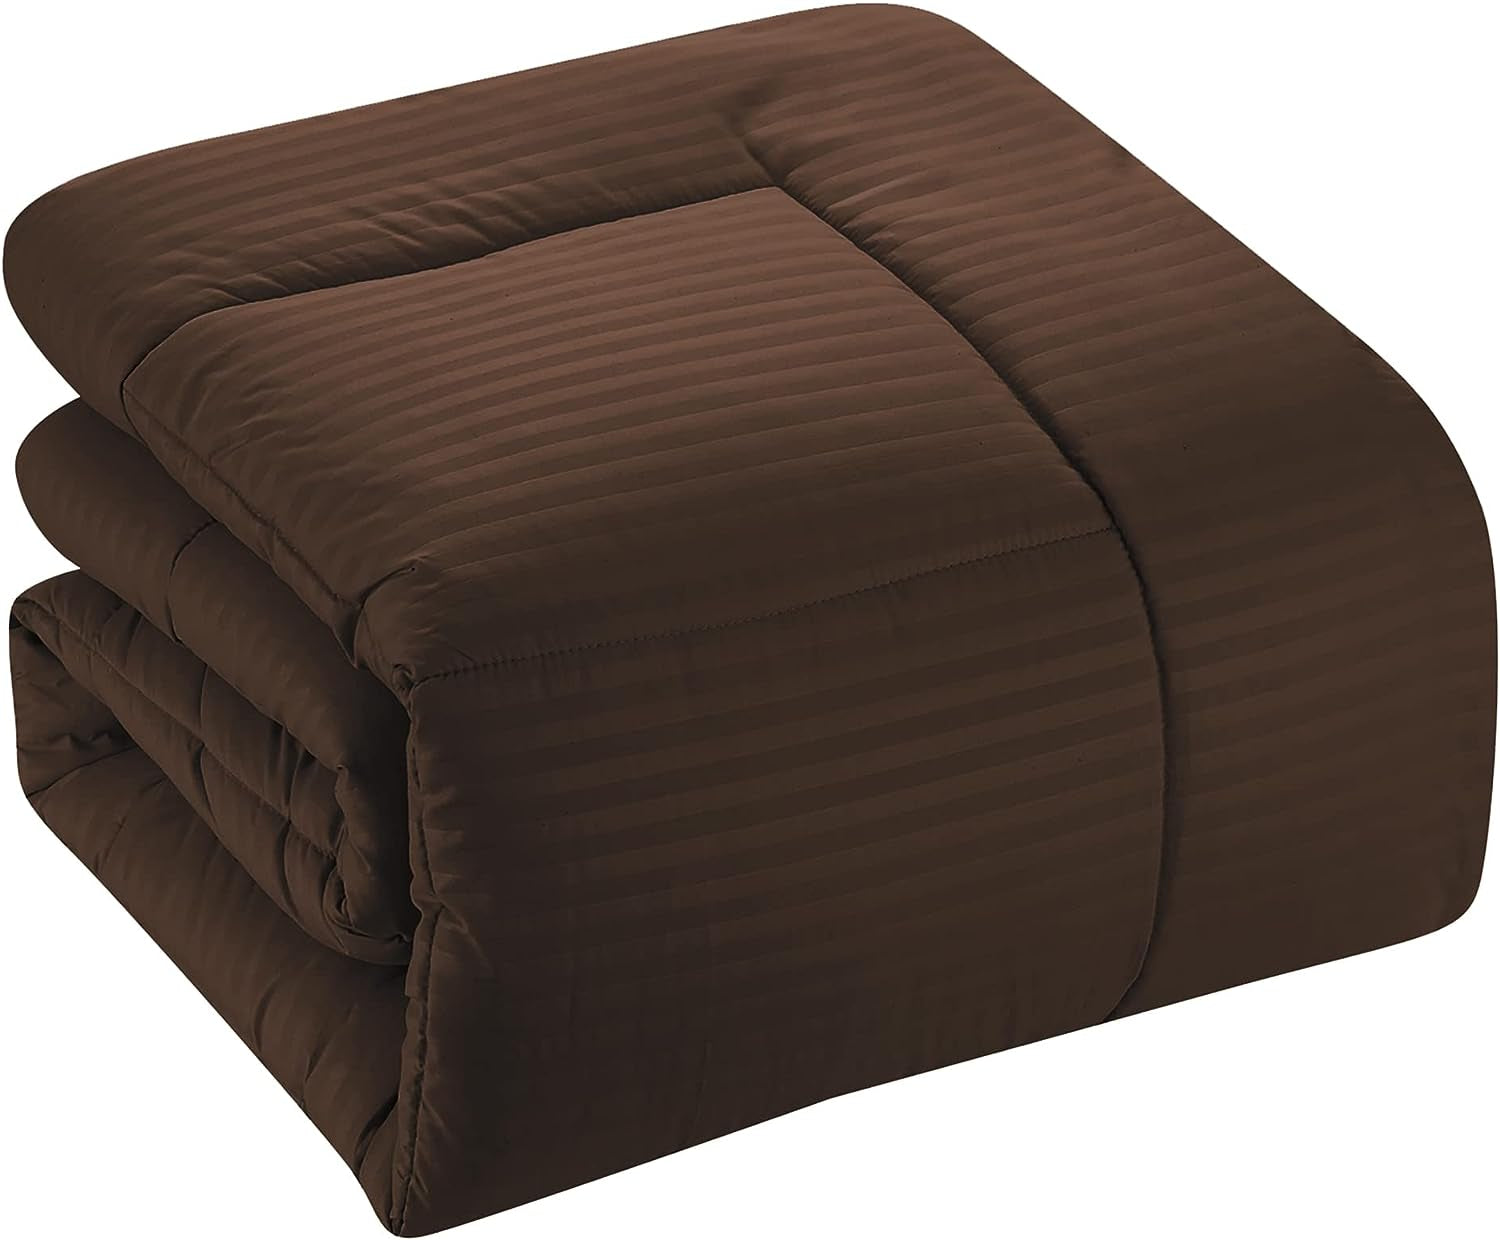 Twin Comforter 6 Piece Bed Set